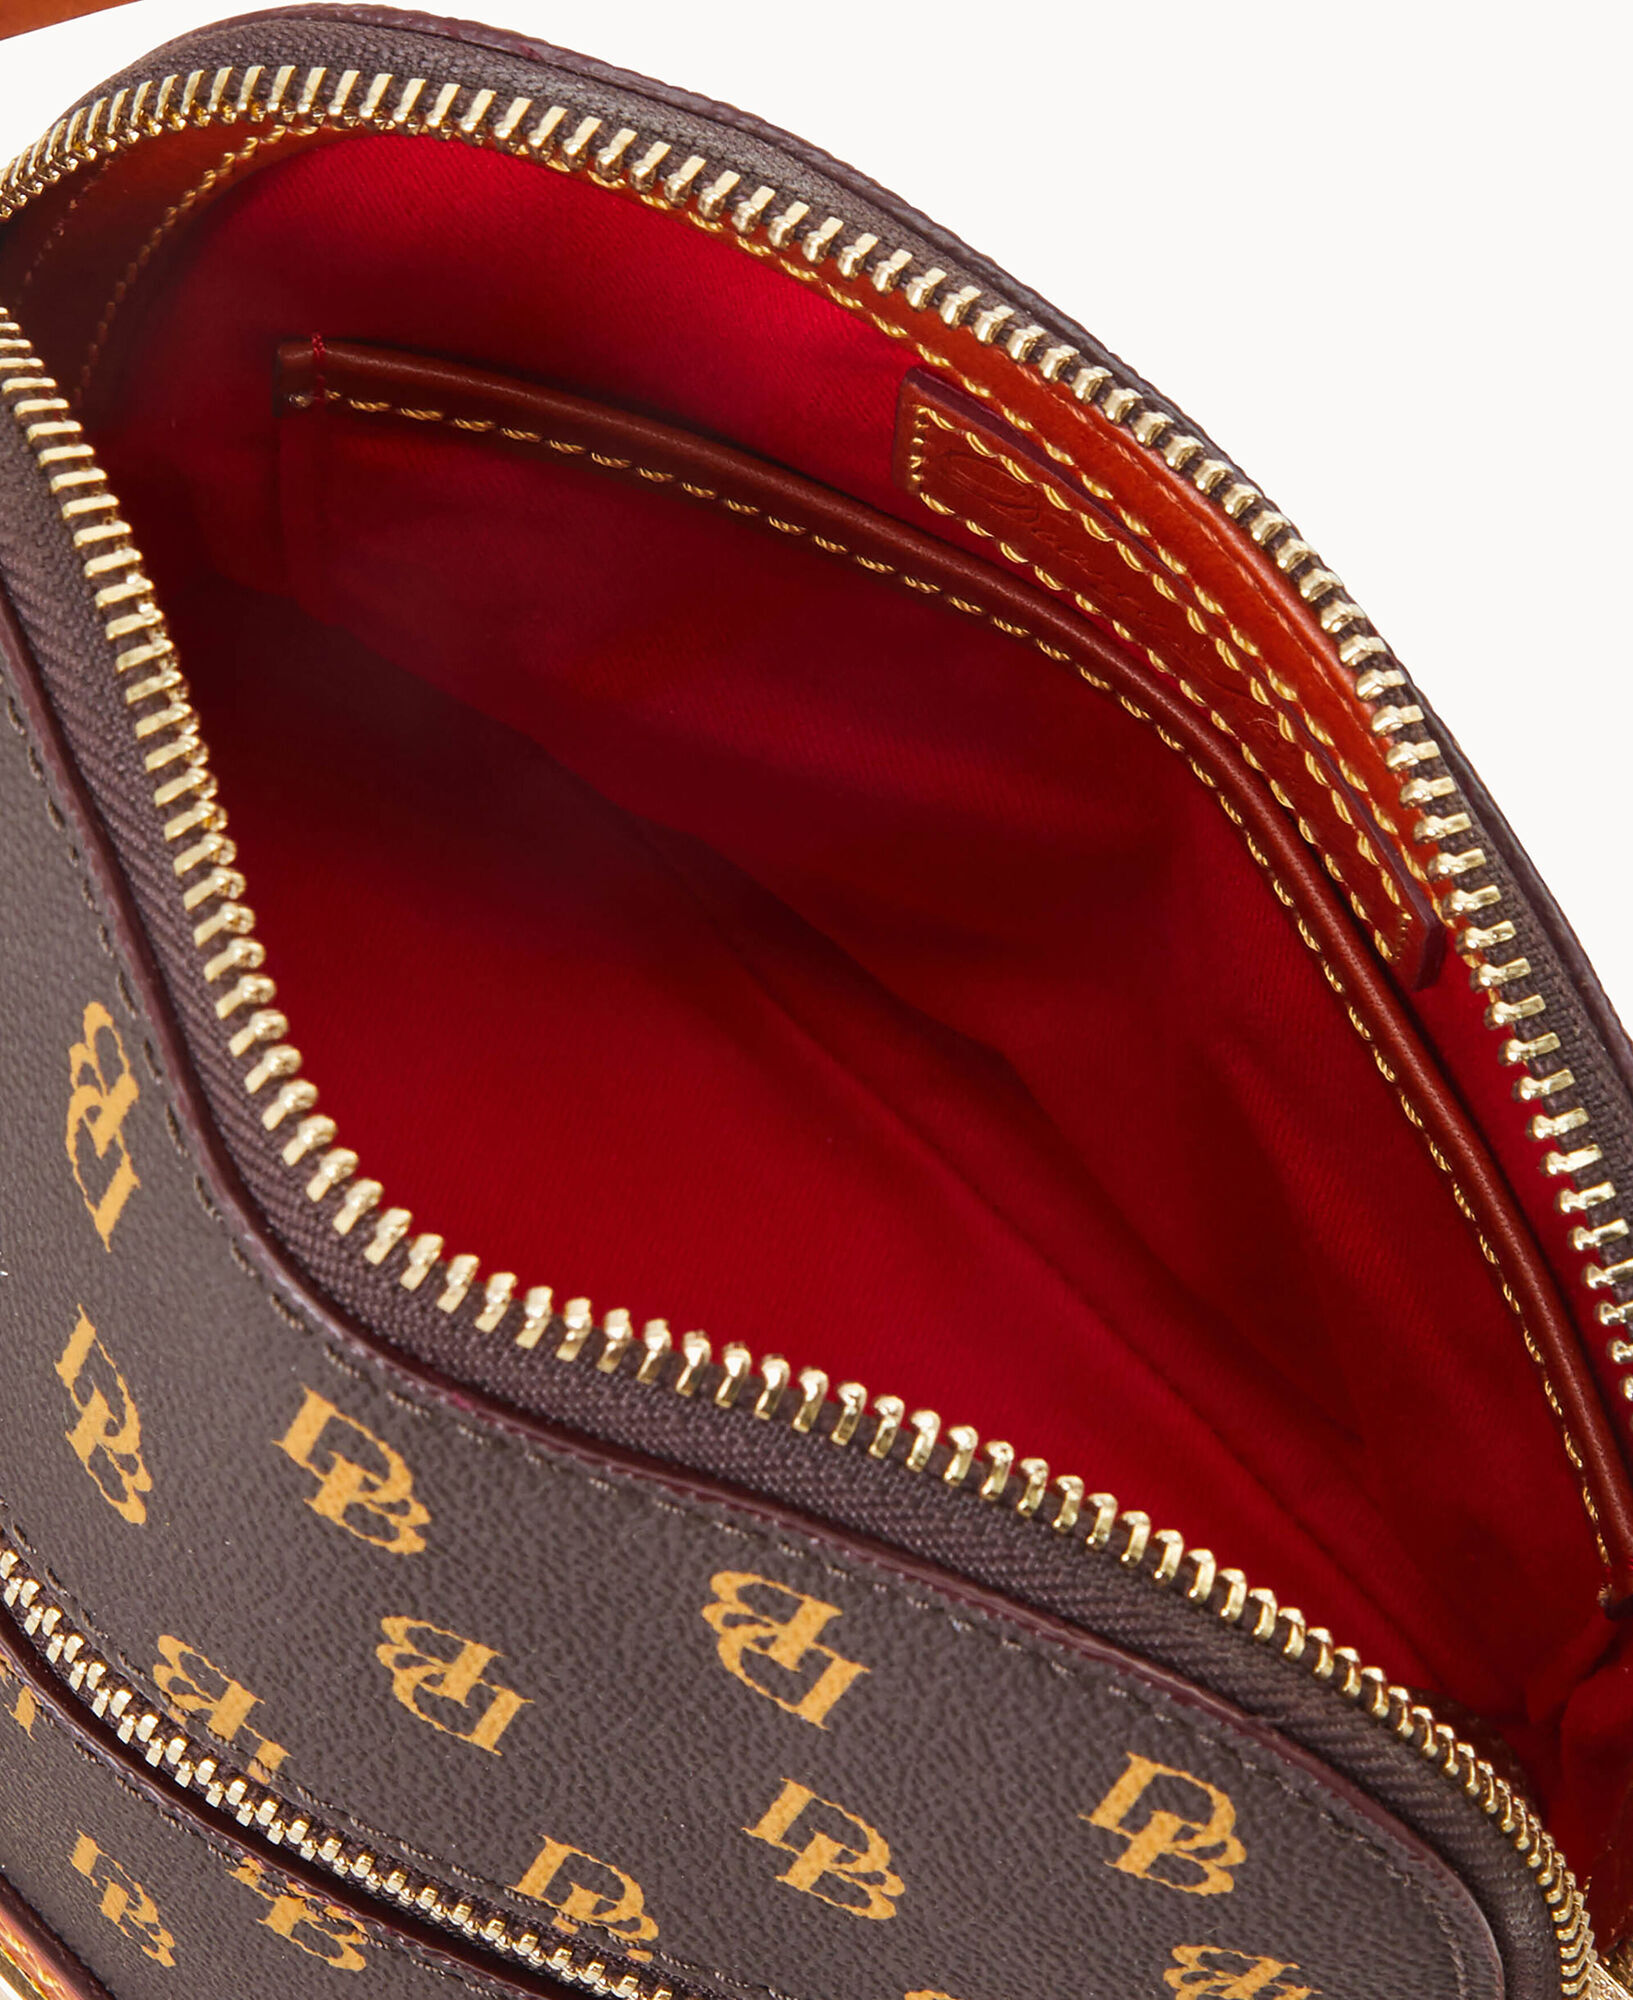 Dooney & Bourke Gretta Crossbody - ShopStyle Shoulder Bags